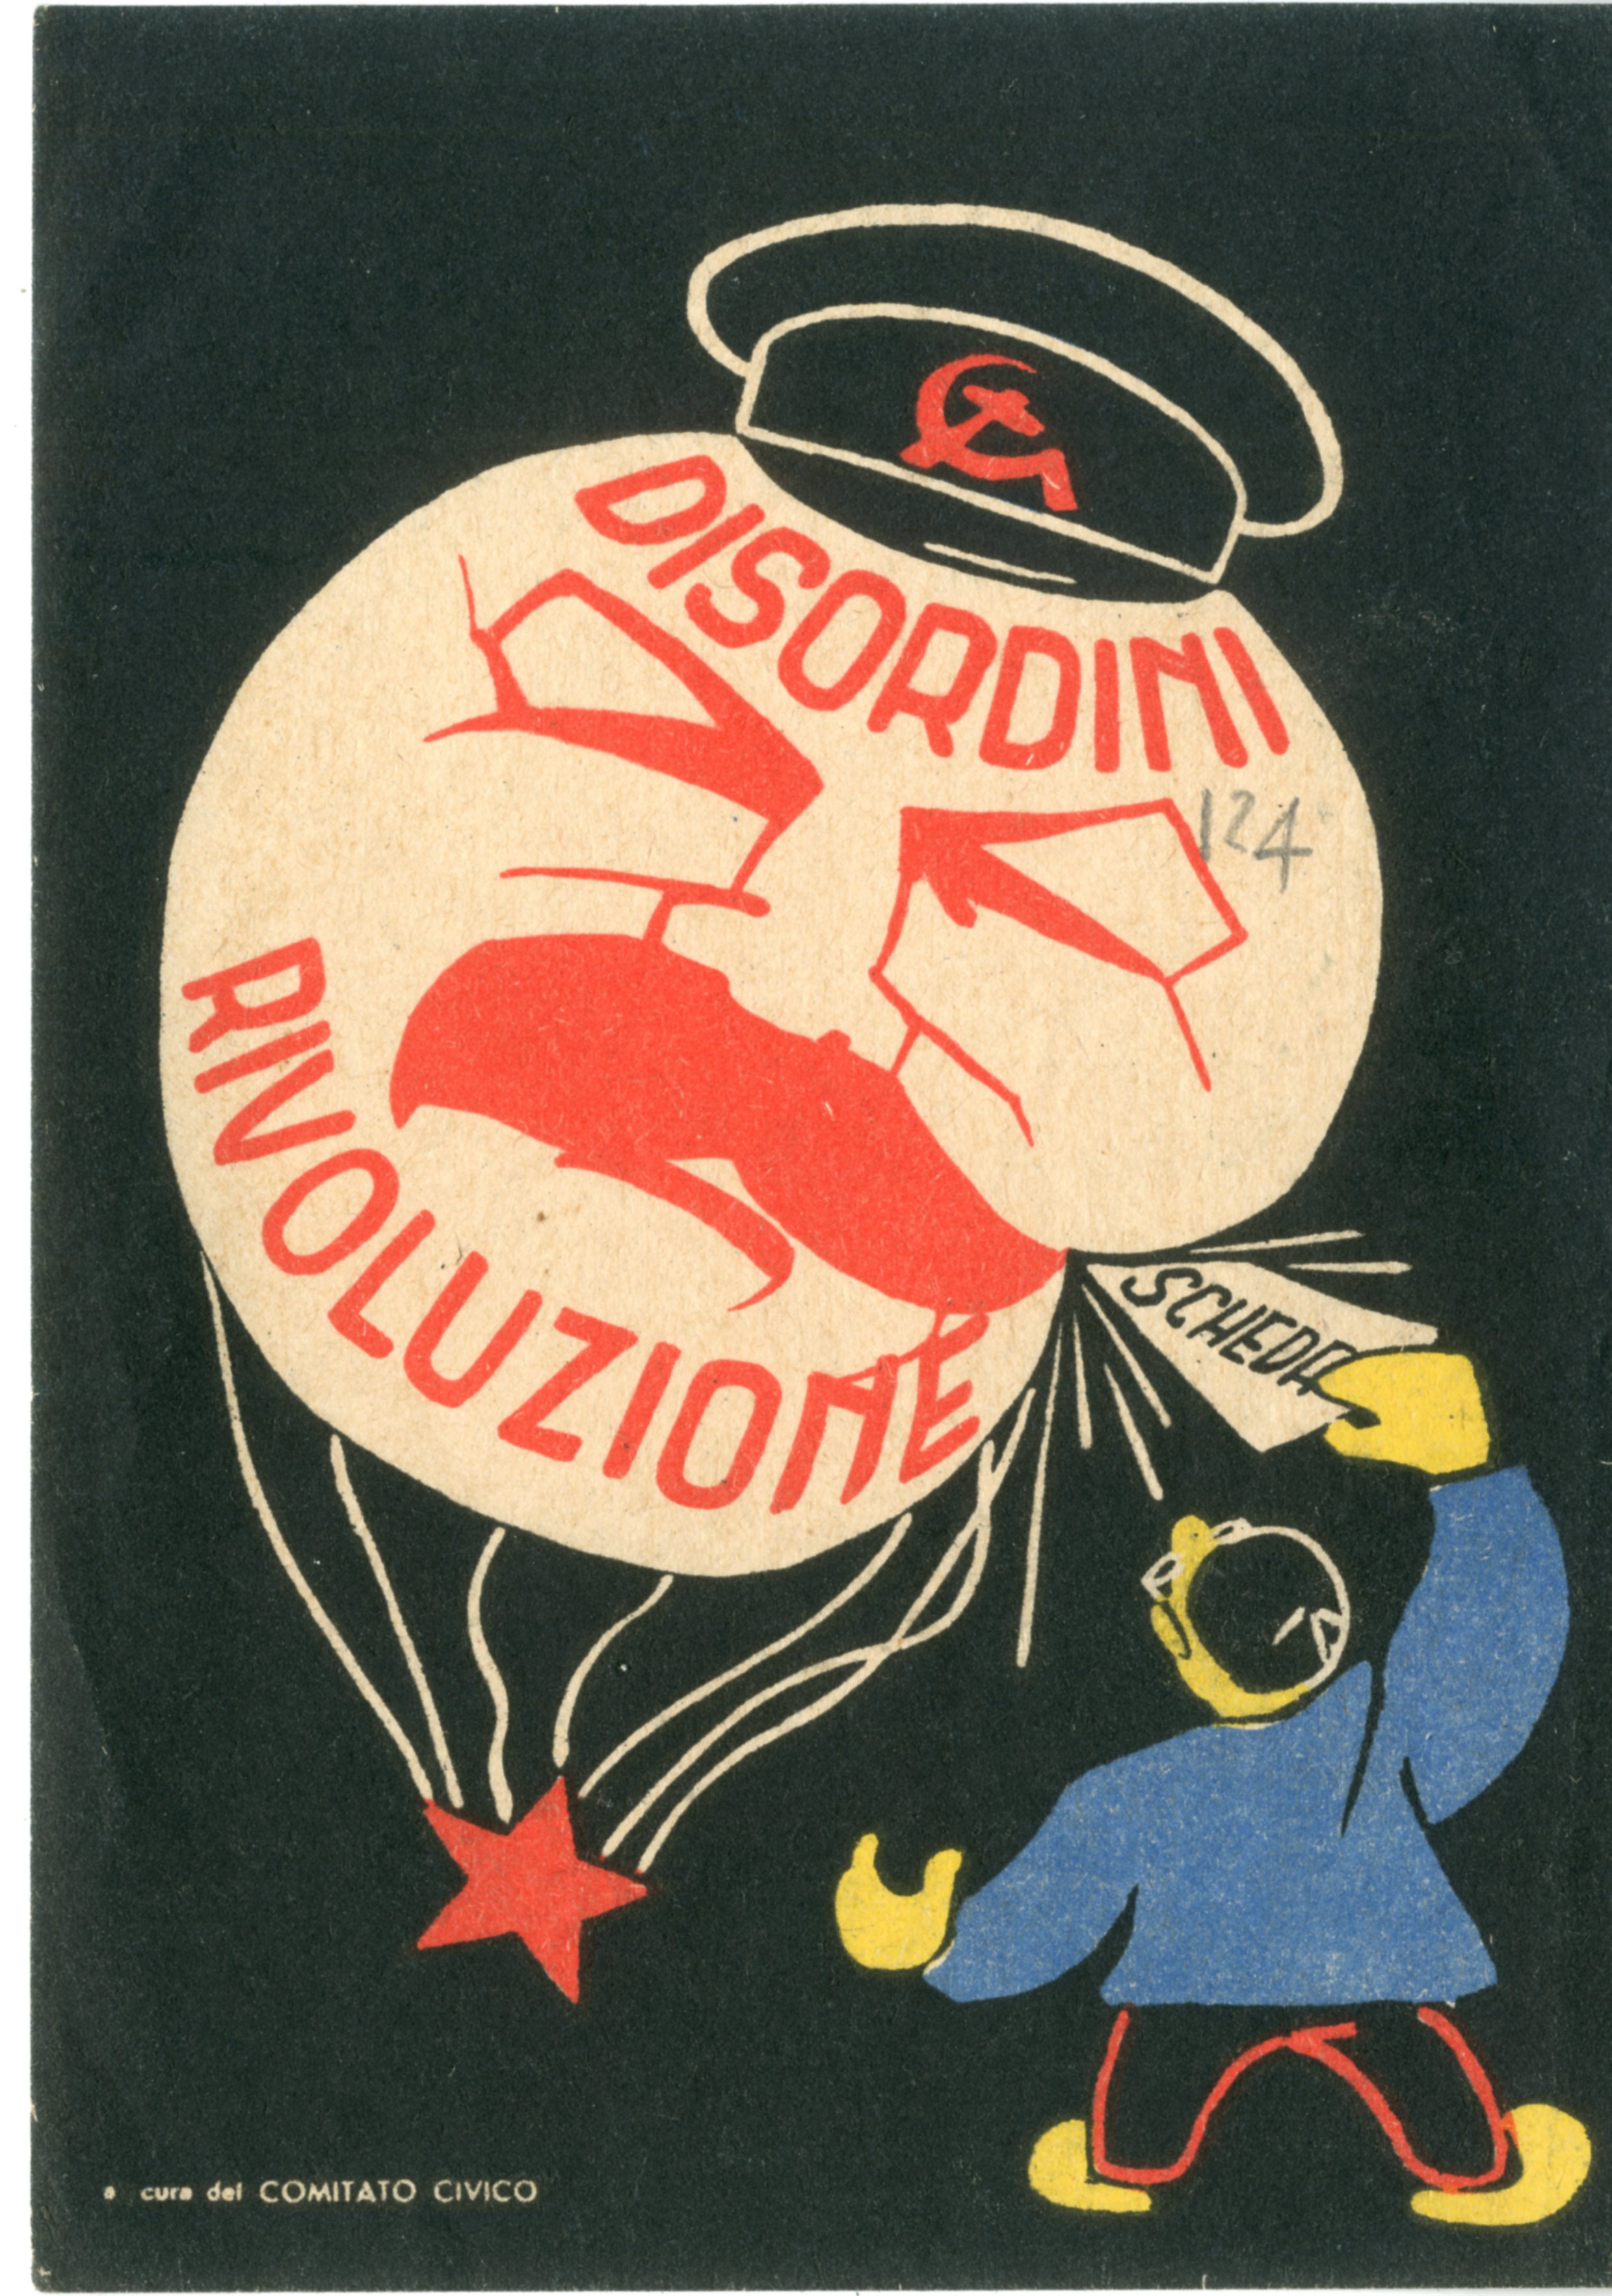 Comunicazione politica. Cartolina dei Comitati civici, che invita gli elettori a votare per sconfiggere la "minaccia" del comunismo nelle elezioni del 1948